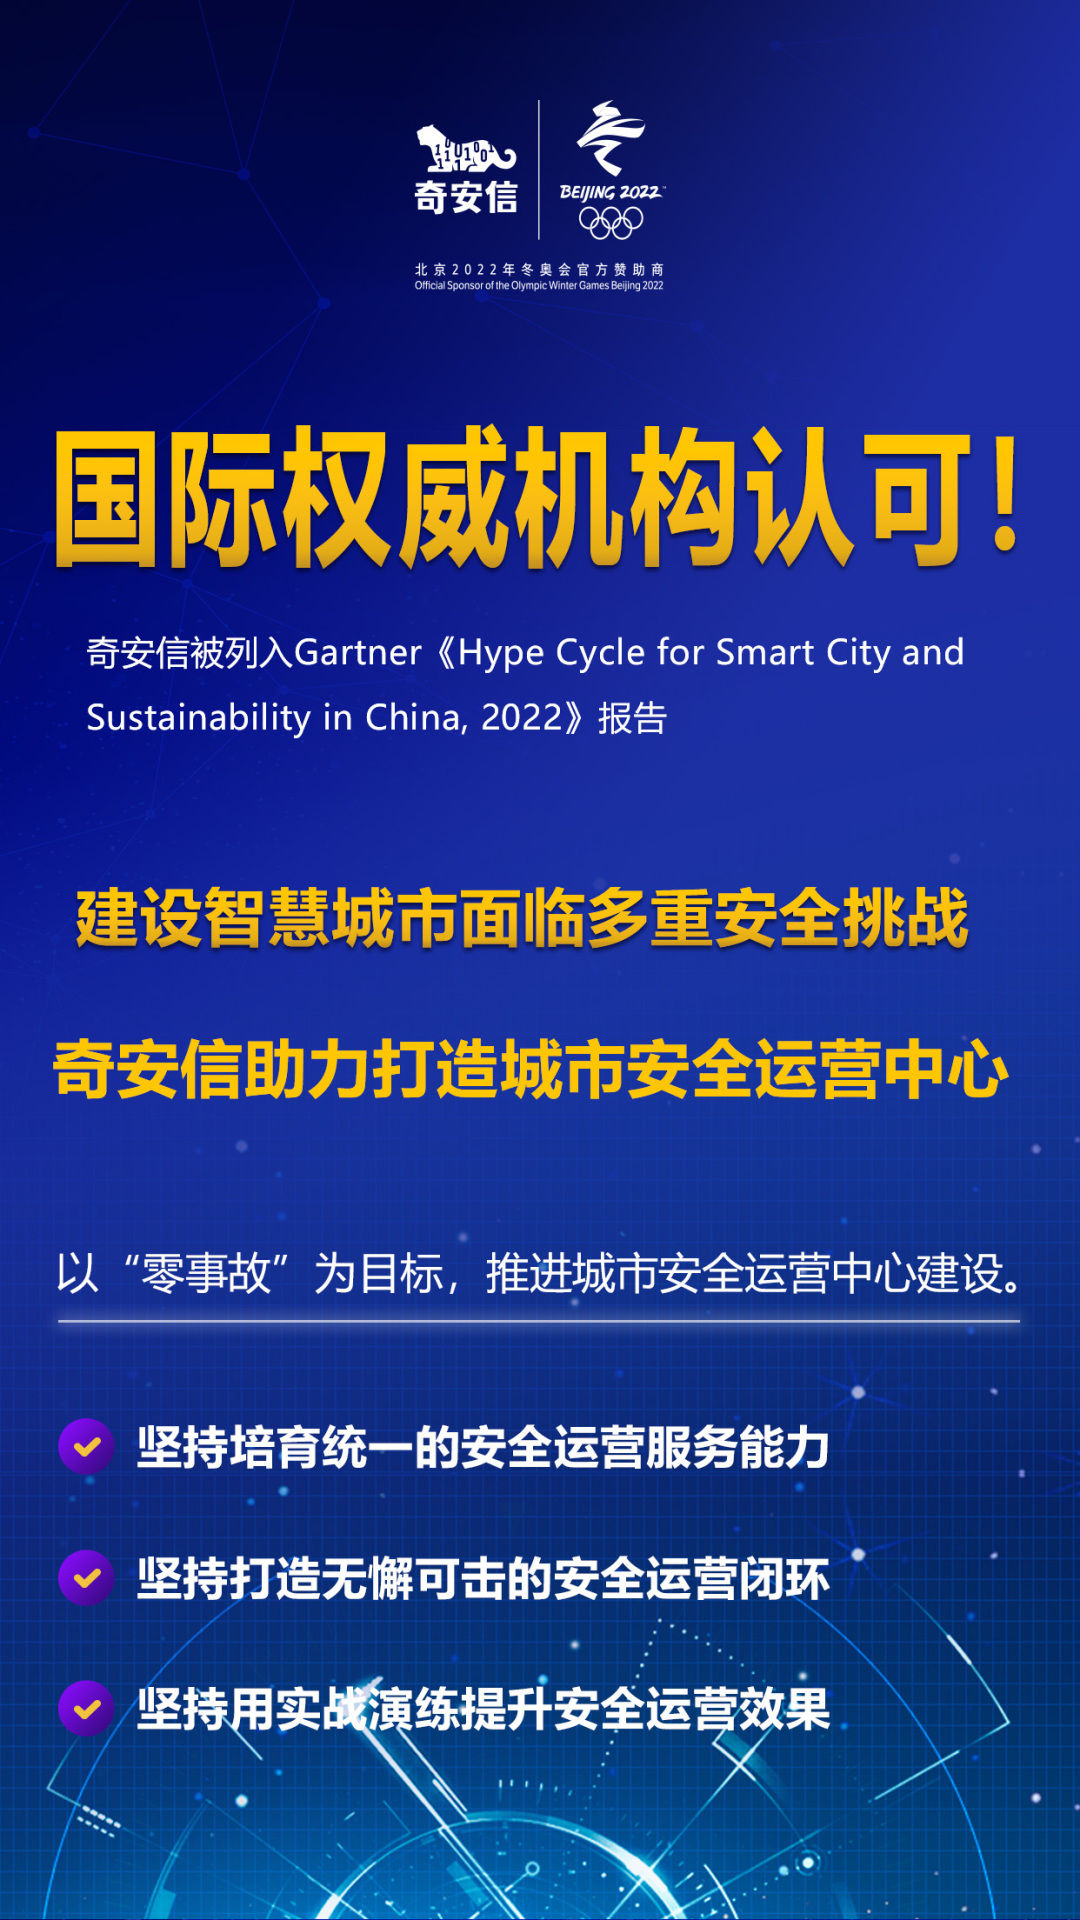 奇安信被列入Gartner《2022中国智慧城市与可持续发展技术成熟度曲线报告》